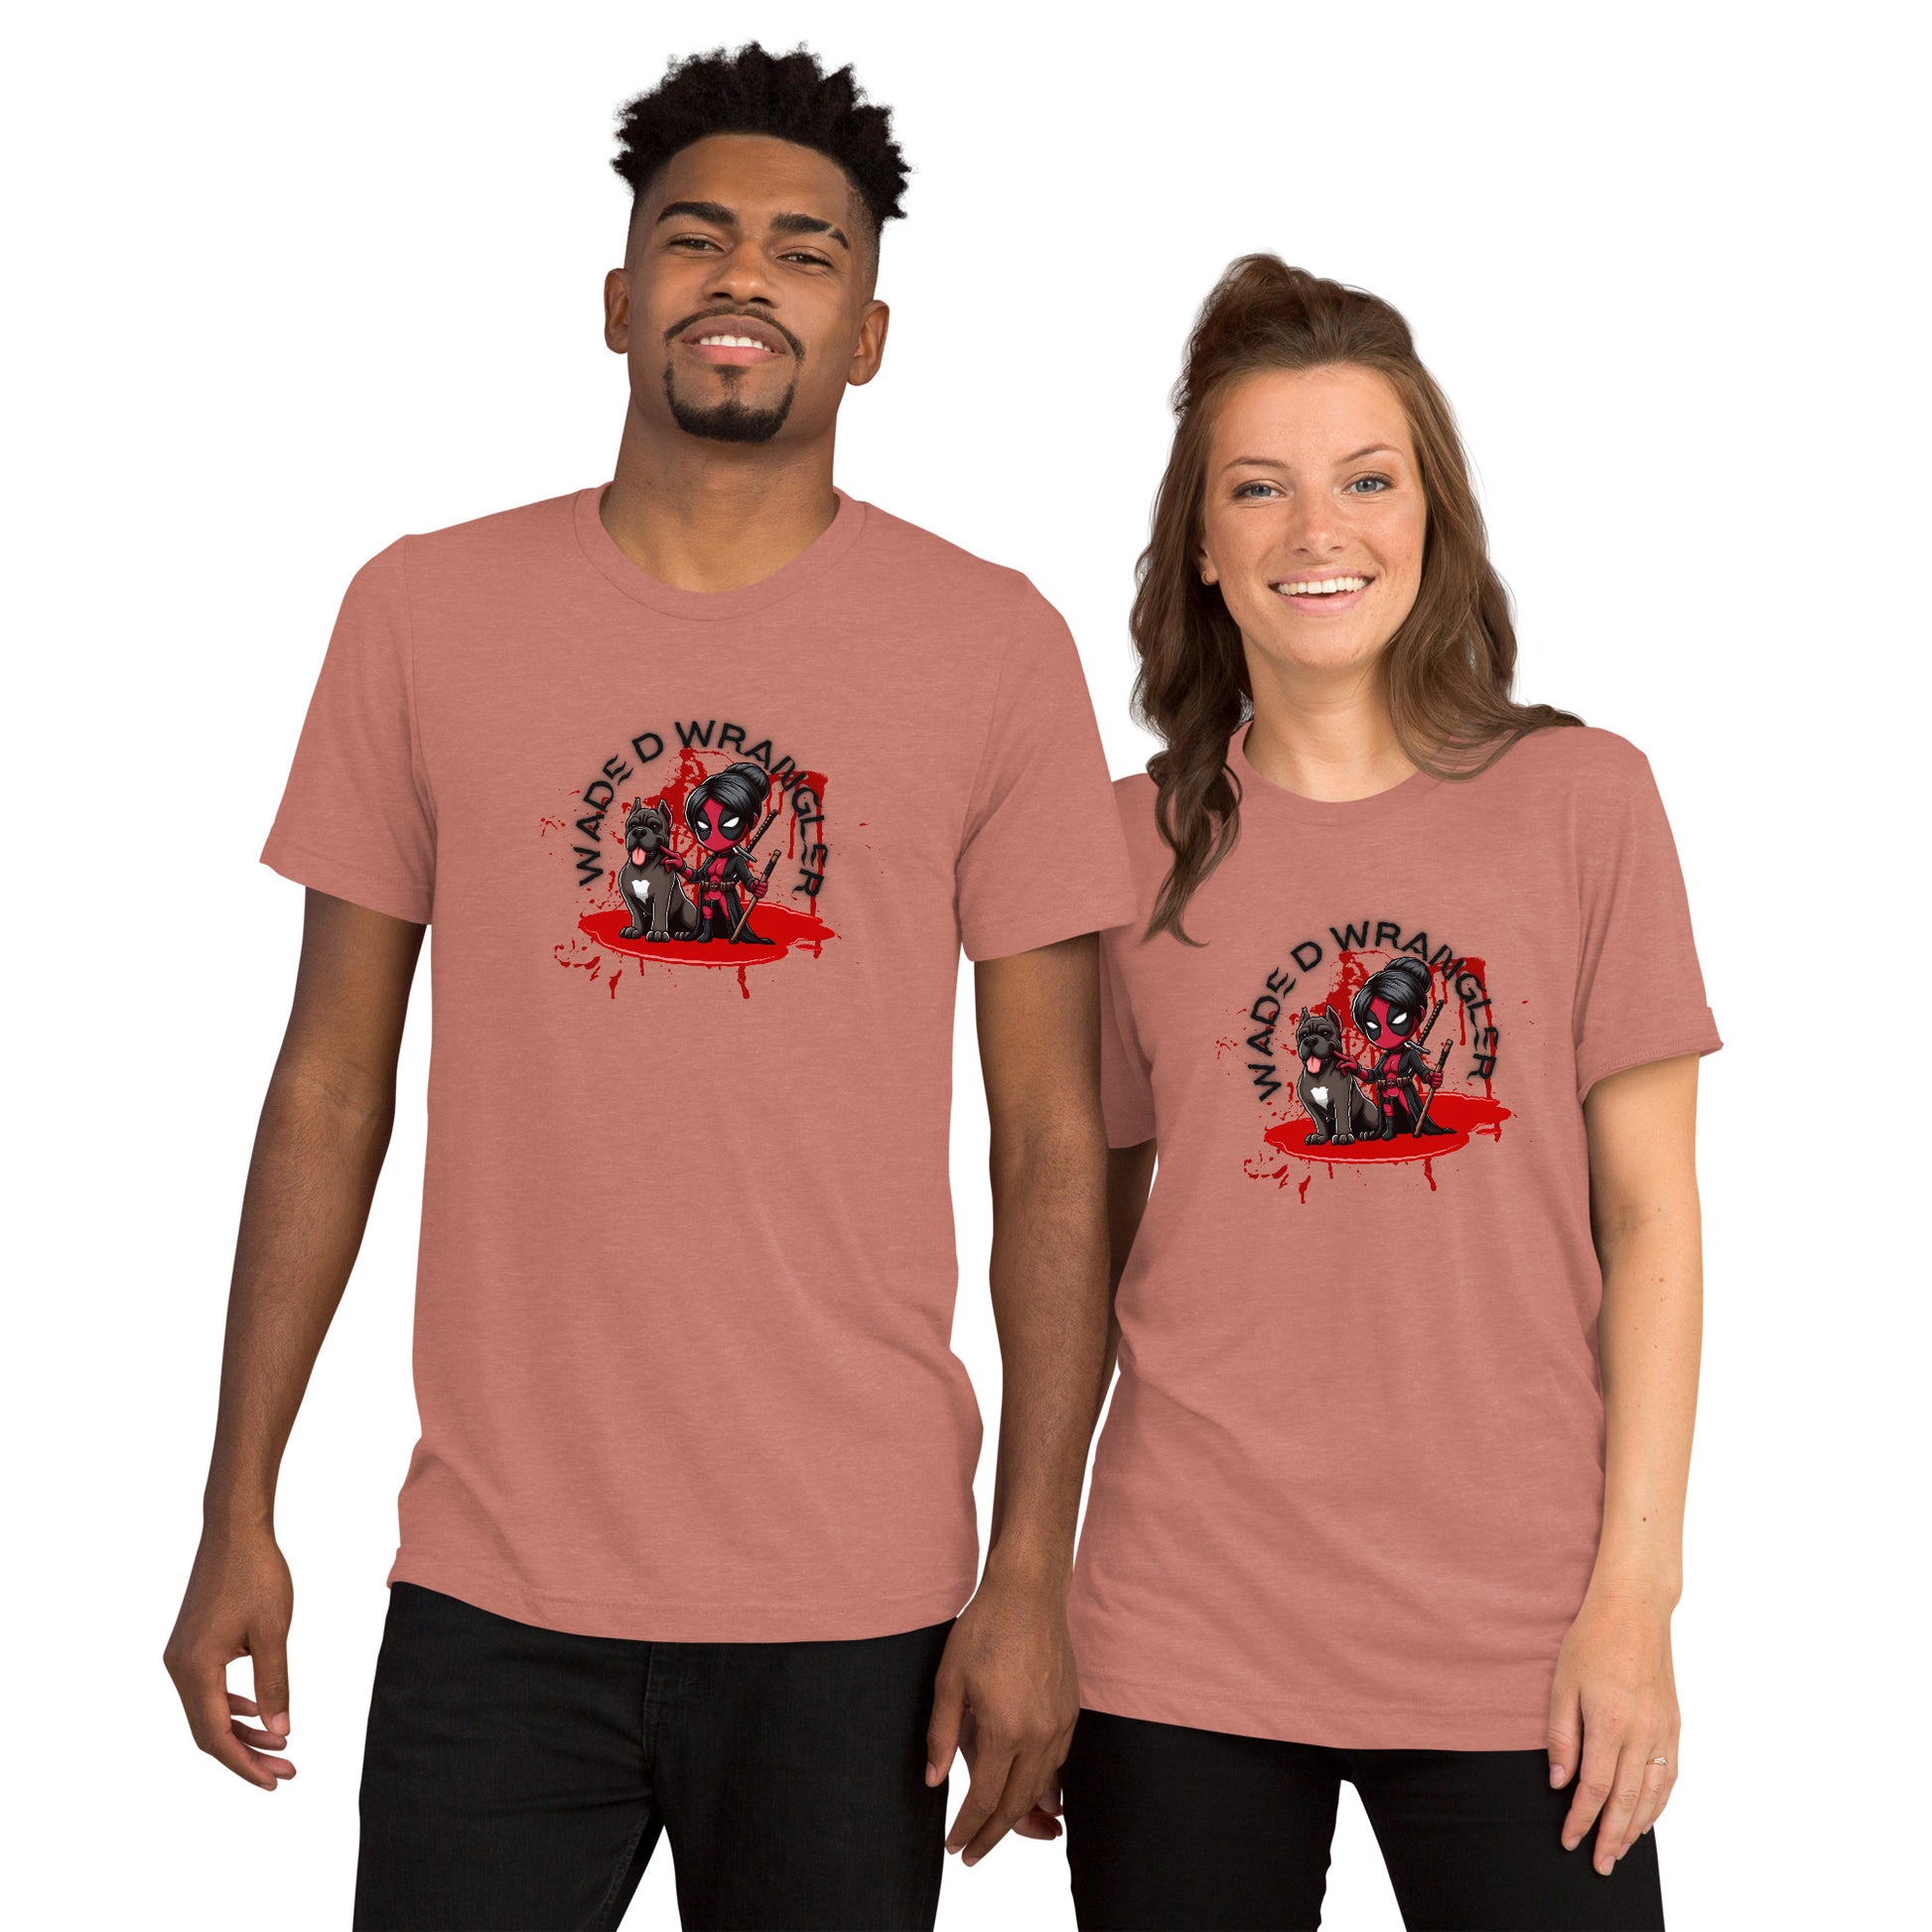 a man and a woman wearing matching t - shirts